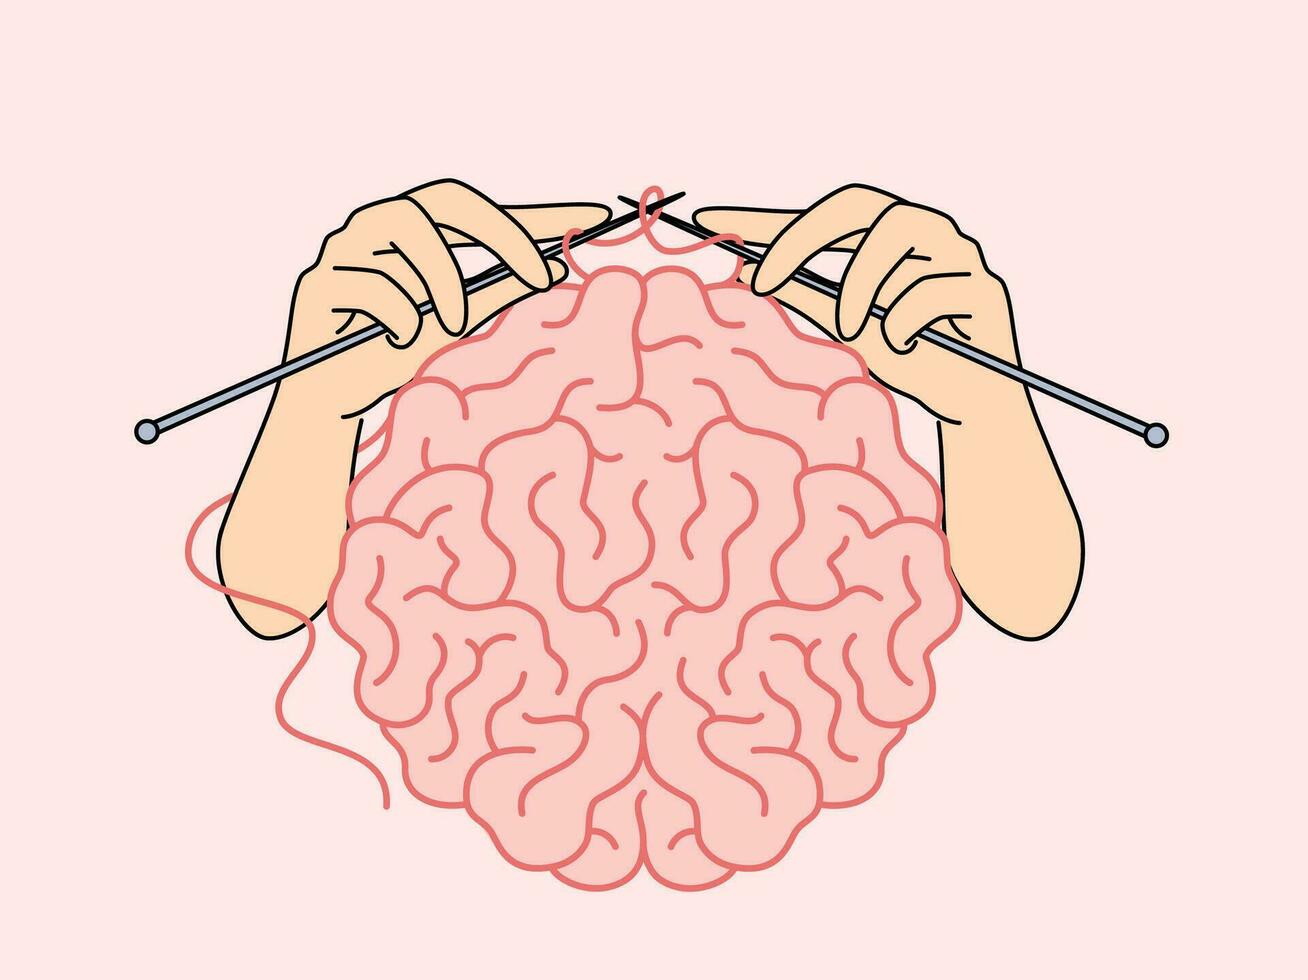 Mensch Gehirn und Hände mit Stricken Nadeln, wie Metapher zum intellektuell Entwicklung vektor